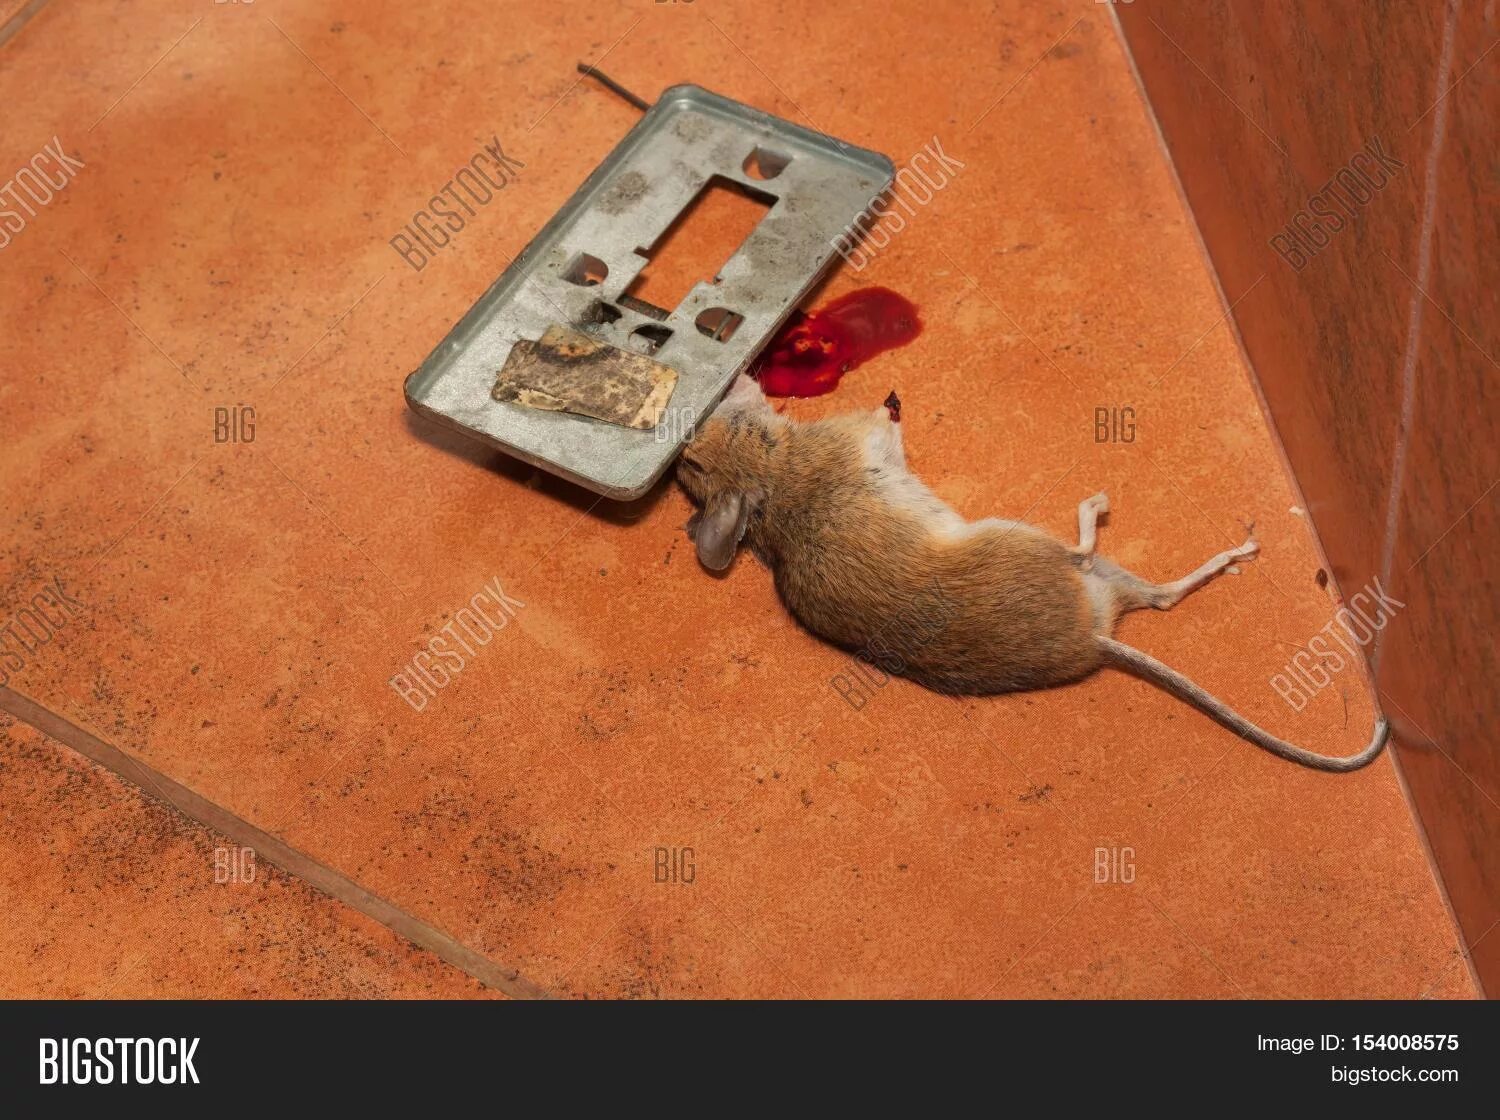 Дамбу съели мыши. Мышка в мышеловке. Крыса попала в мышеловку. Мышеловка с дохлой мышью.